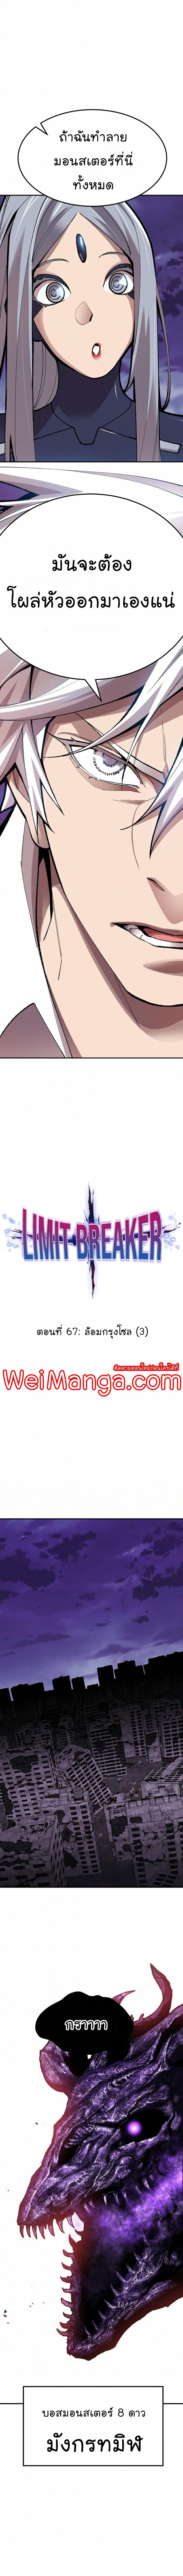 Limit Breaker67 04